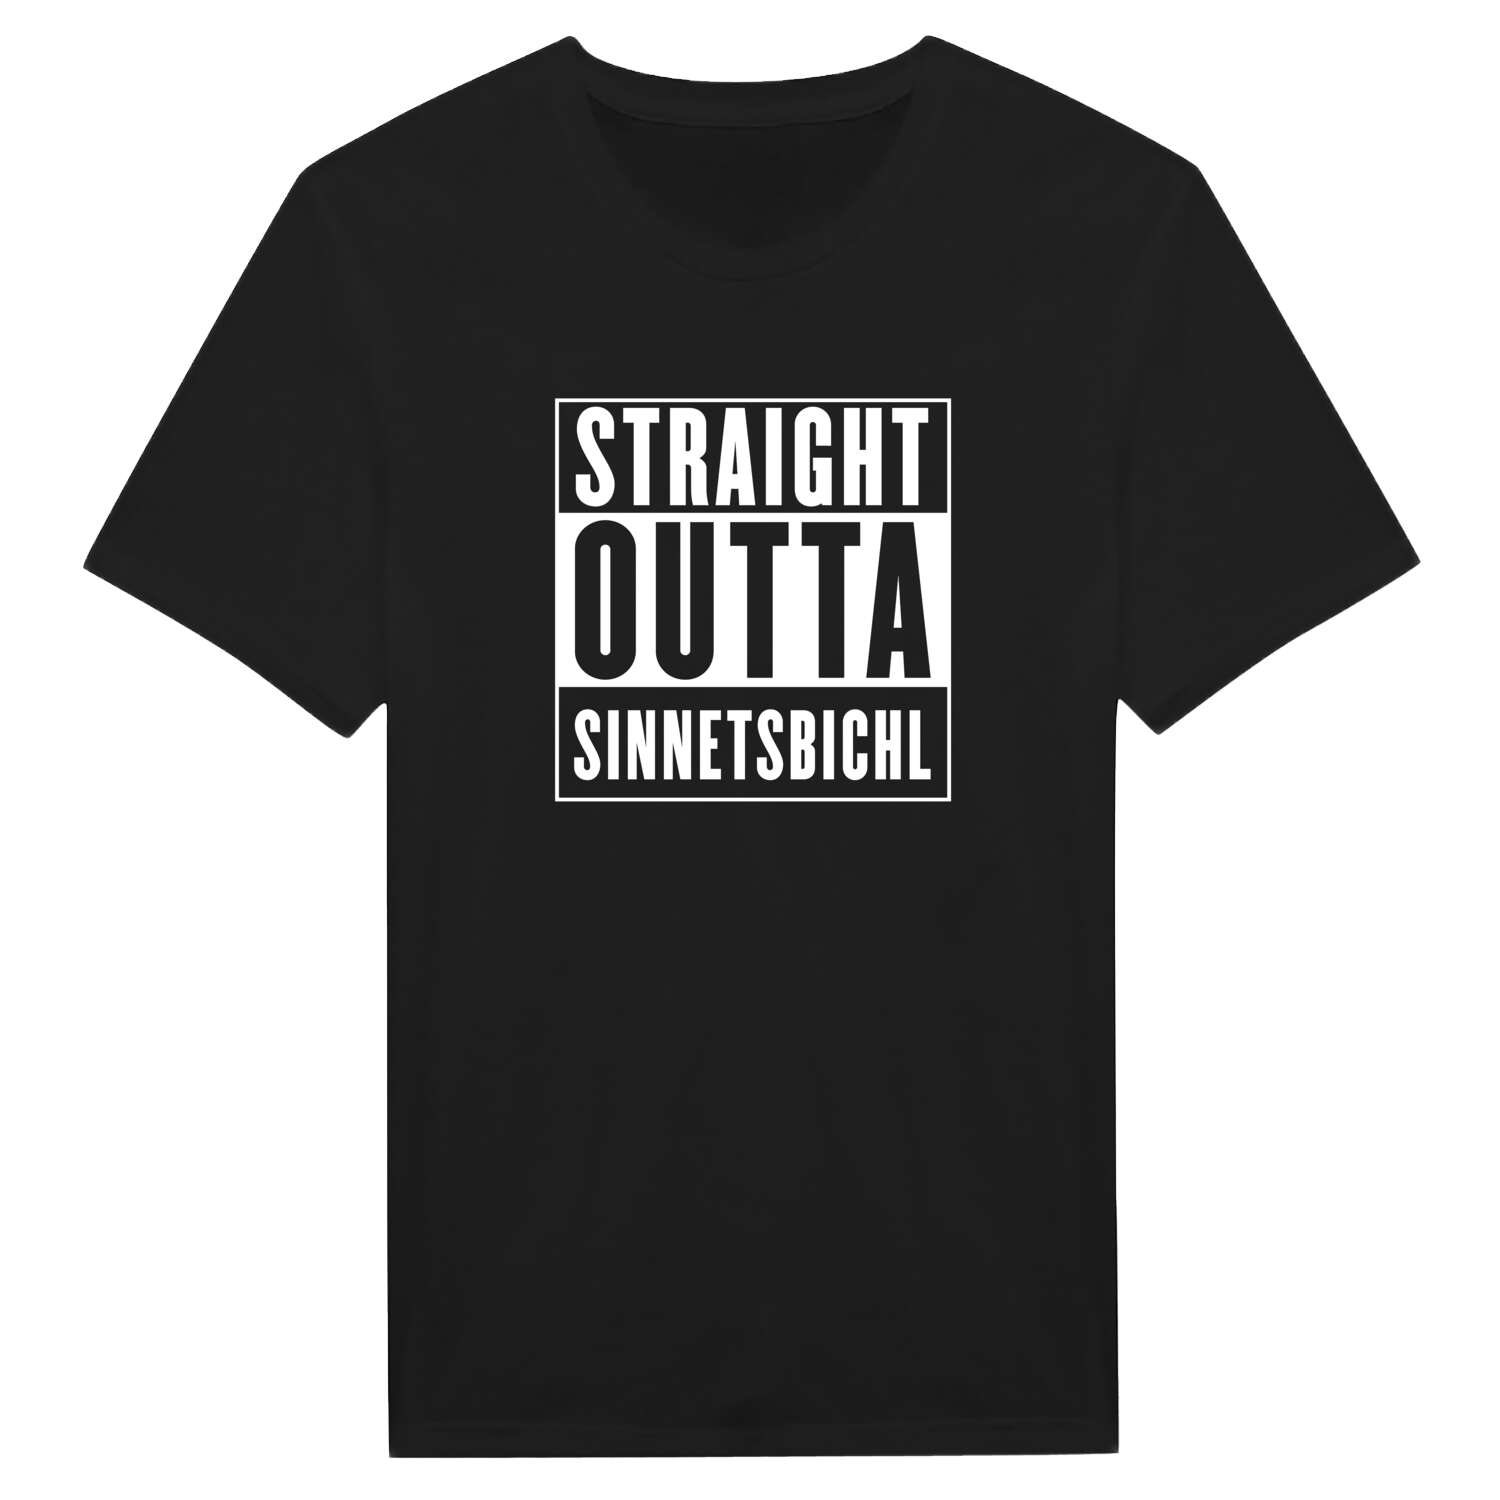 Sinnetsbichl T-Shirt »Straight Outta«